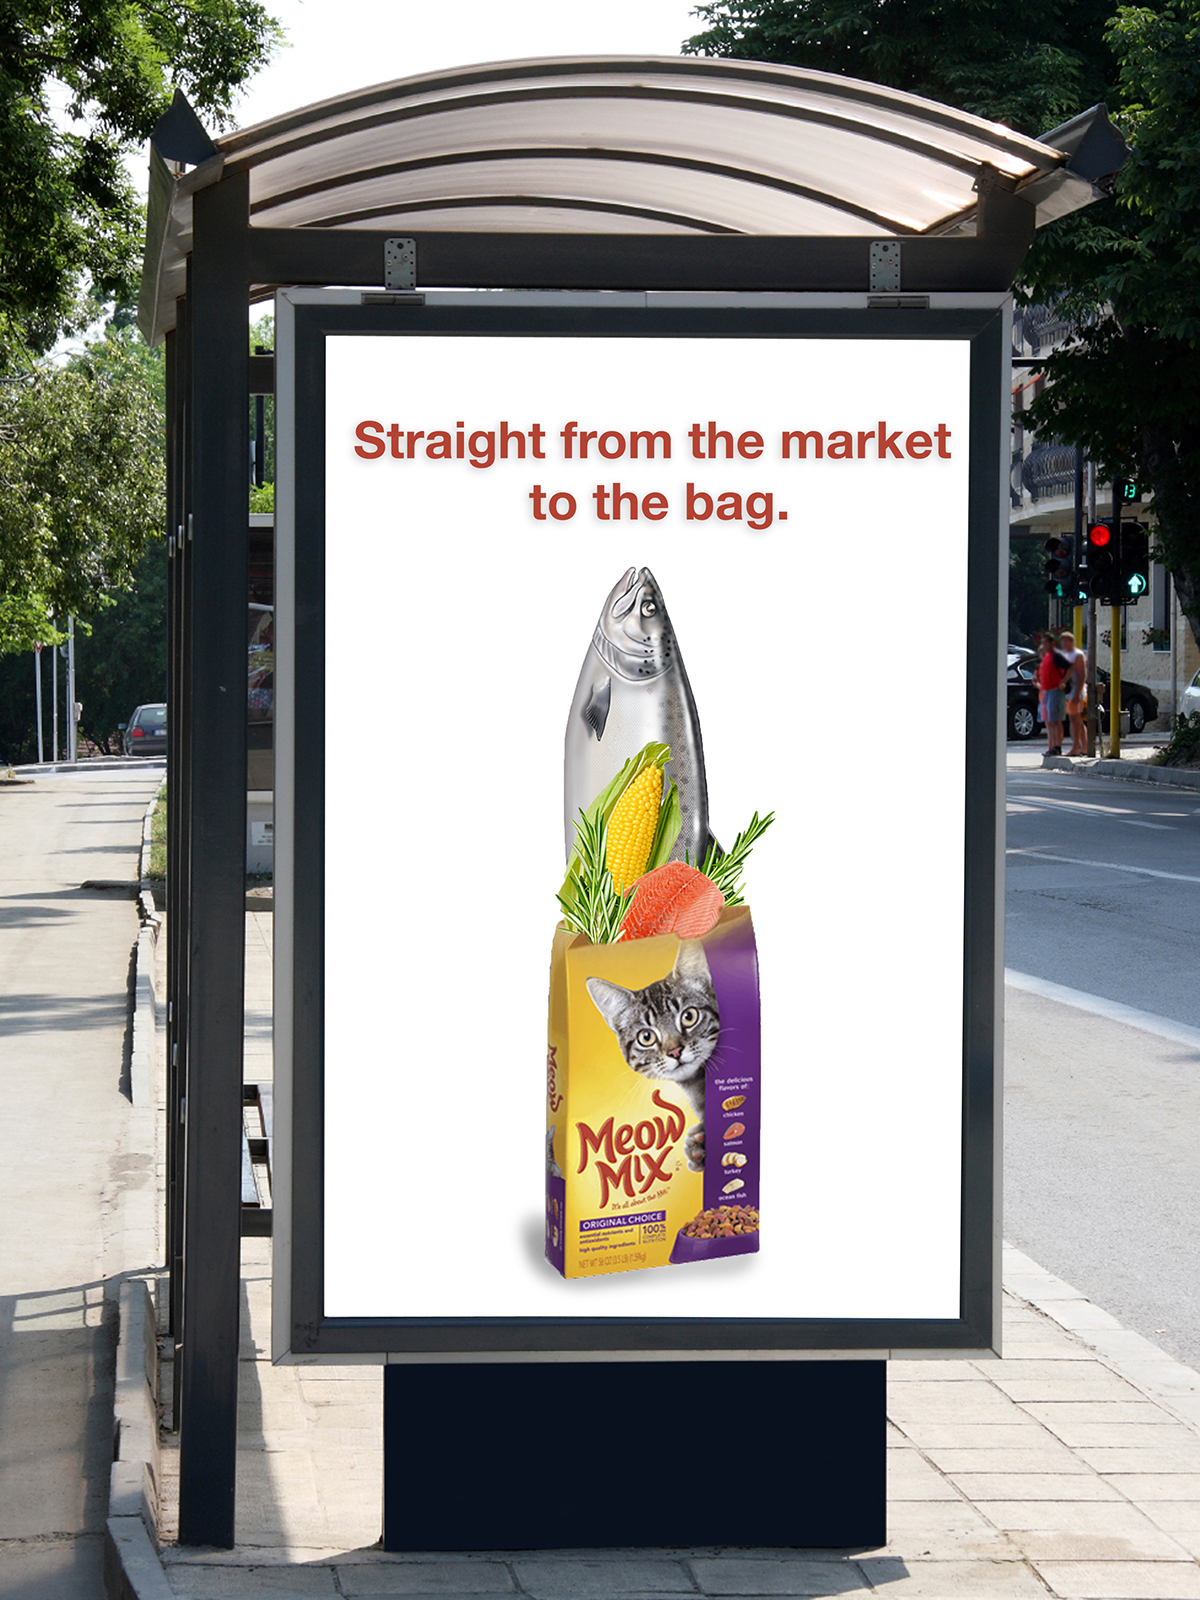 ad ad campaign